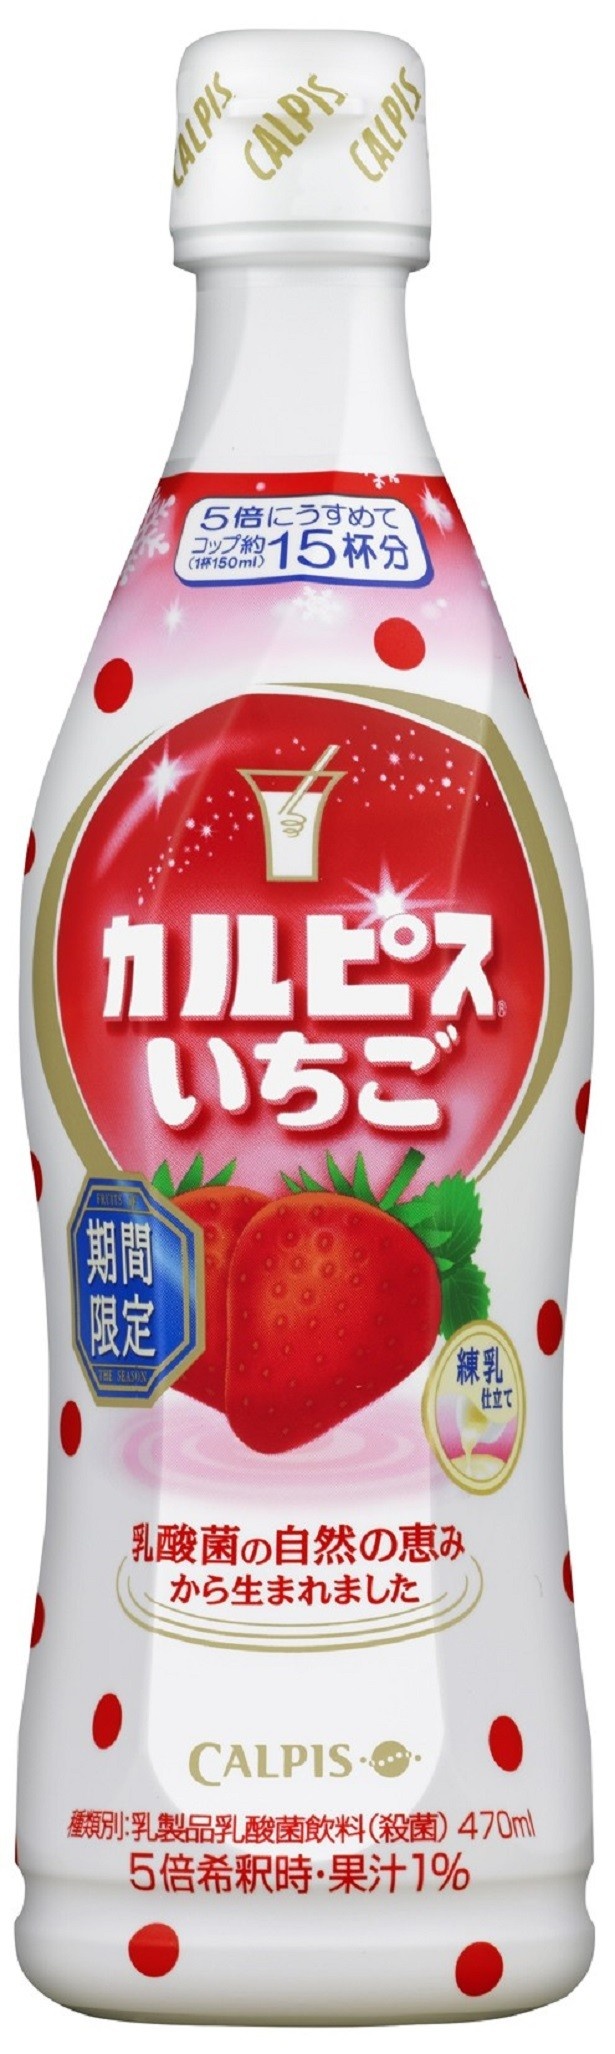 朝摘みイチゴ果汁入りカルピス ラッシー風の乳酸菌飲料が限定発売 1 2 ウォーカープラス